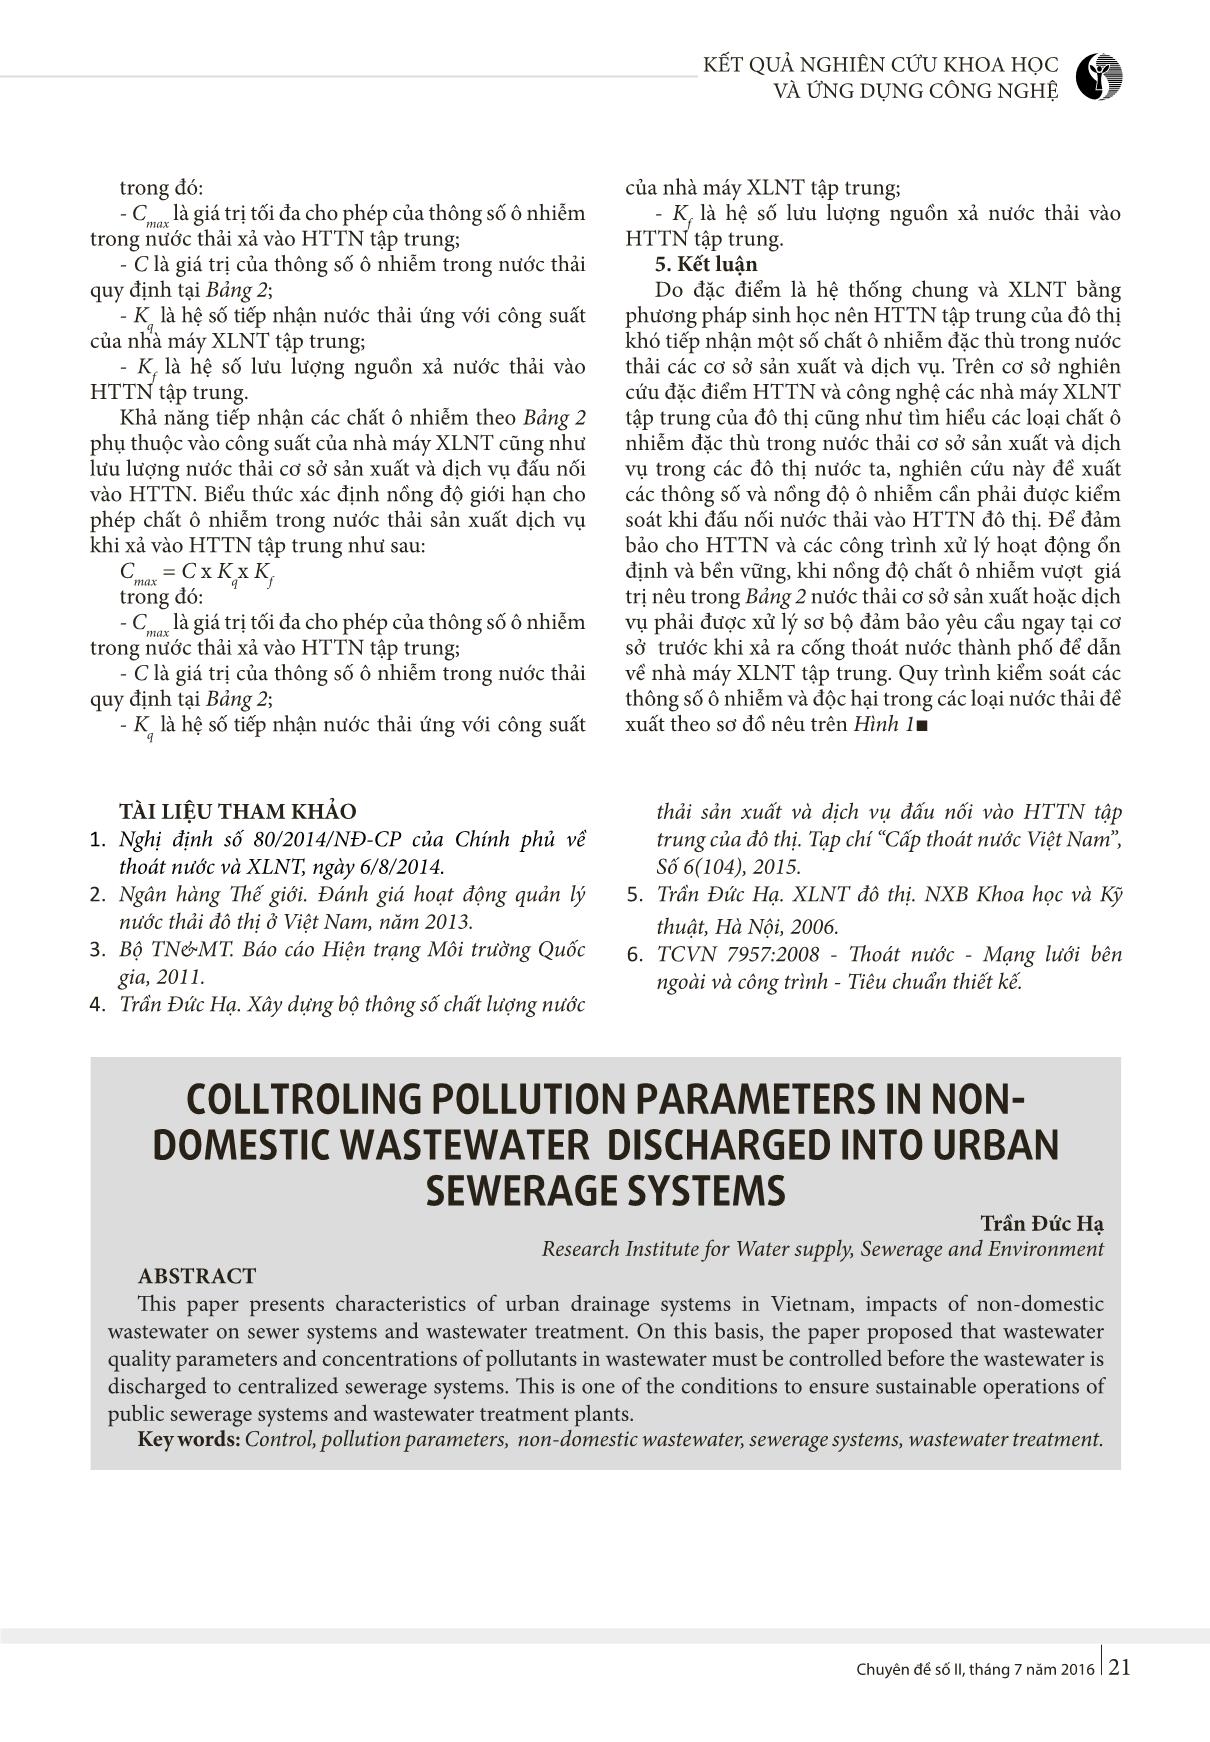 Kiểm soát các thông số ô nhiễm trong nước thải phi sinh hoạt đấu nối vào hệ thống thoát nước đô thị trang 5